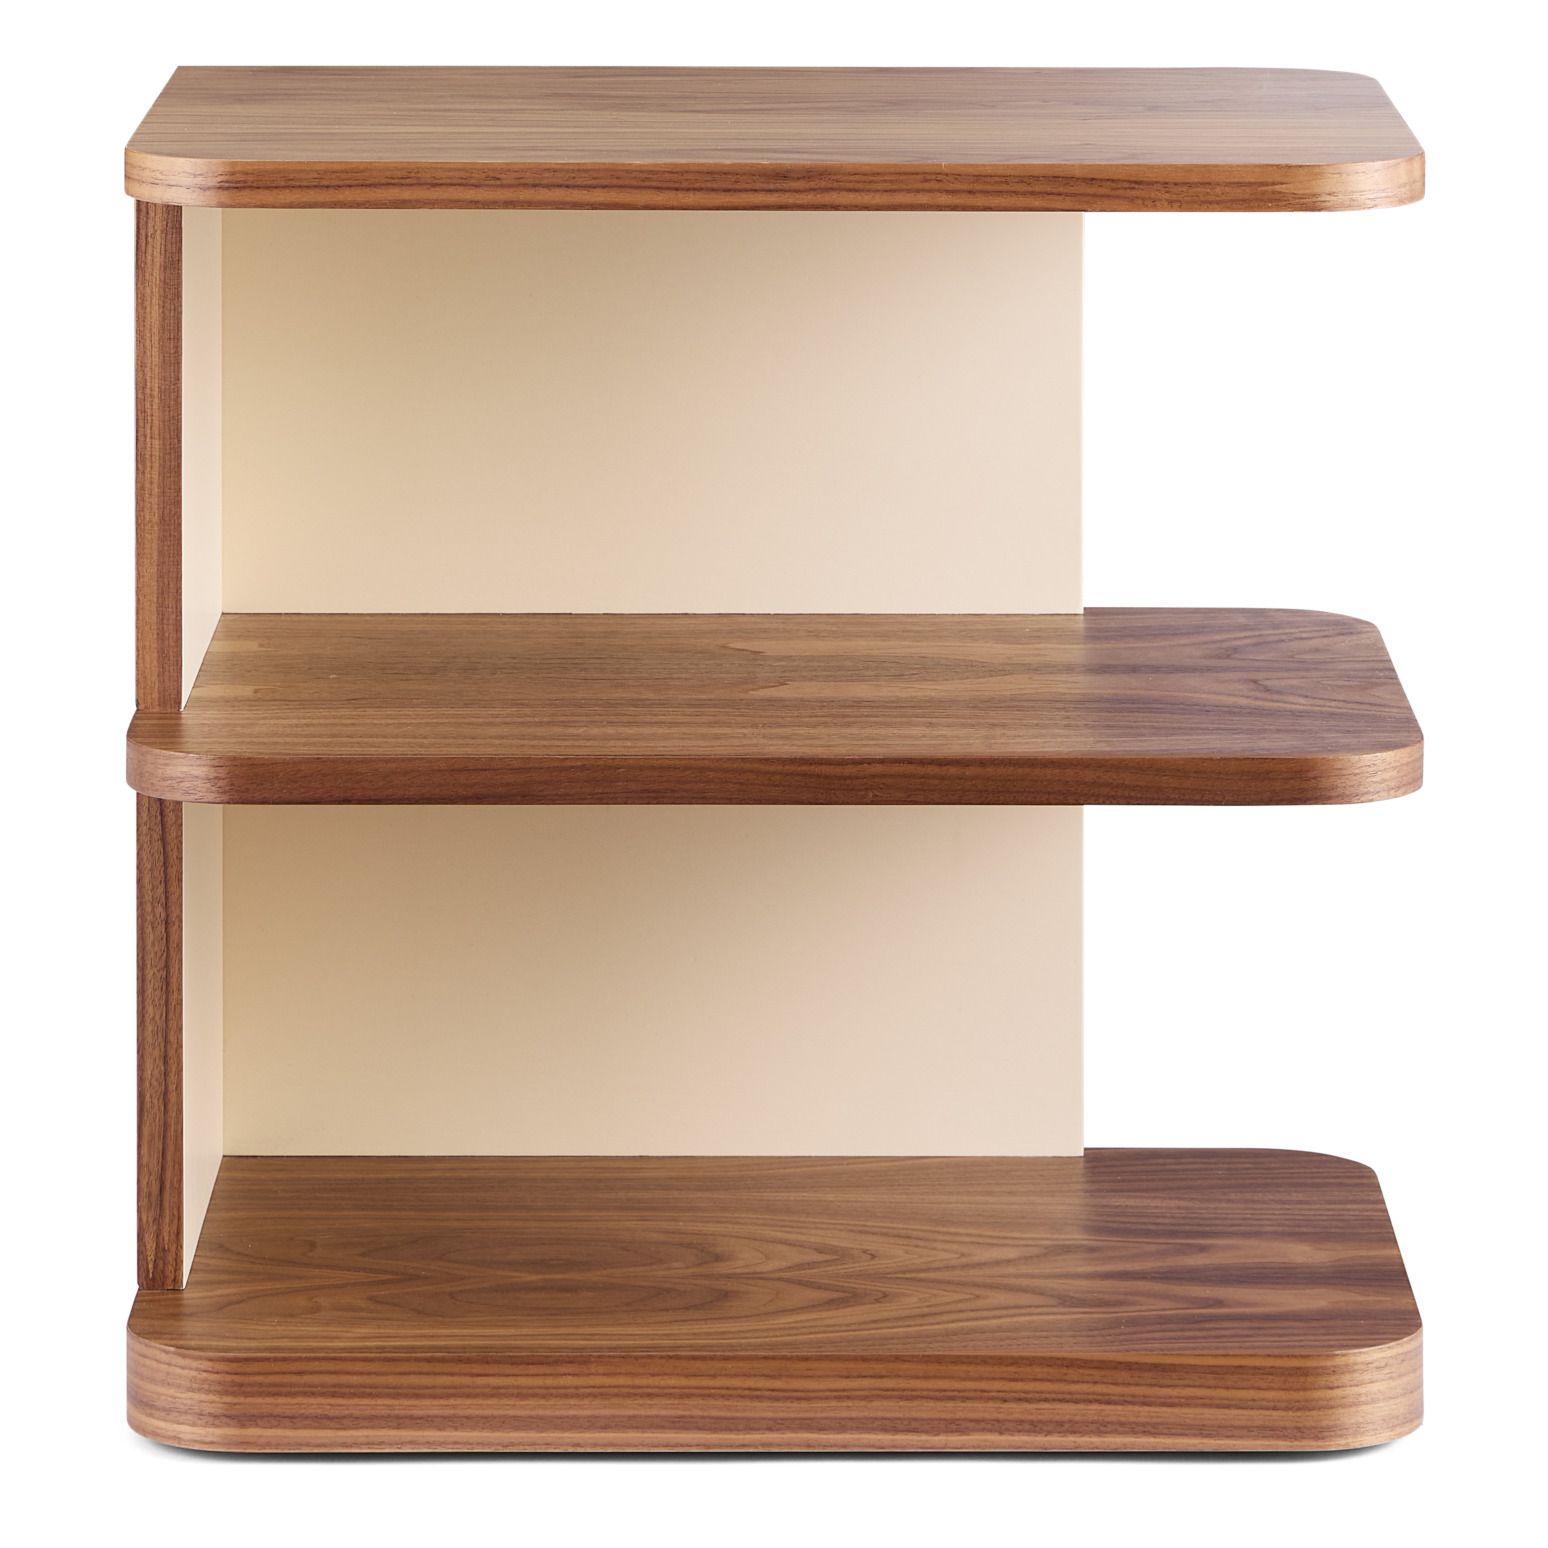 Estantería Librería Sarah de 4 estantes fabricada en madera de